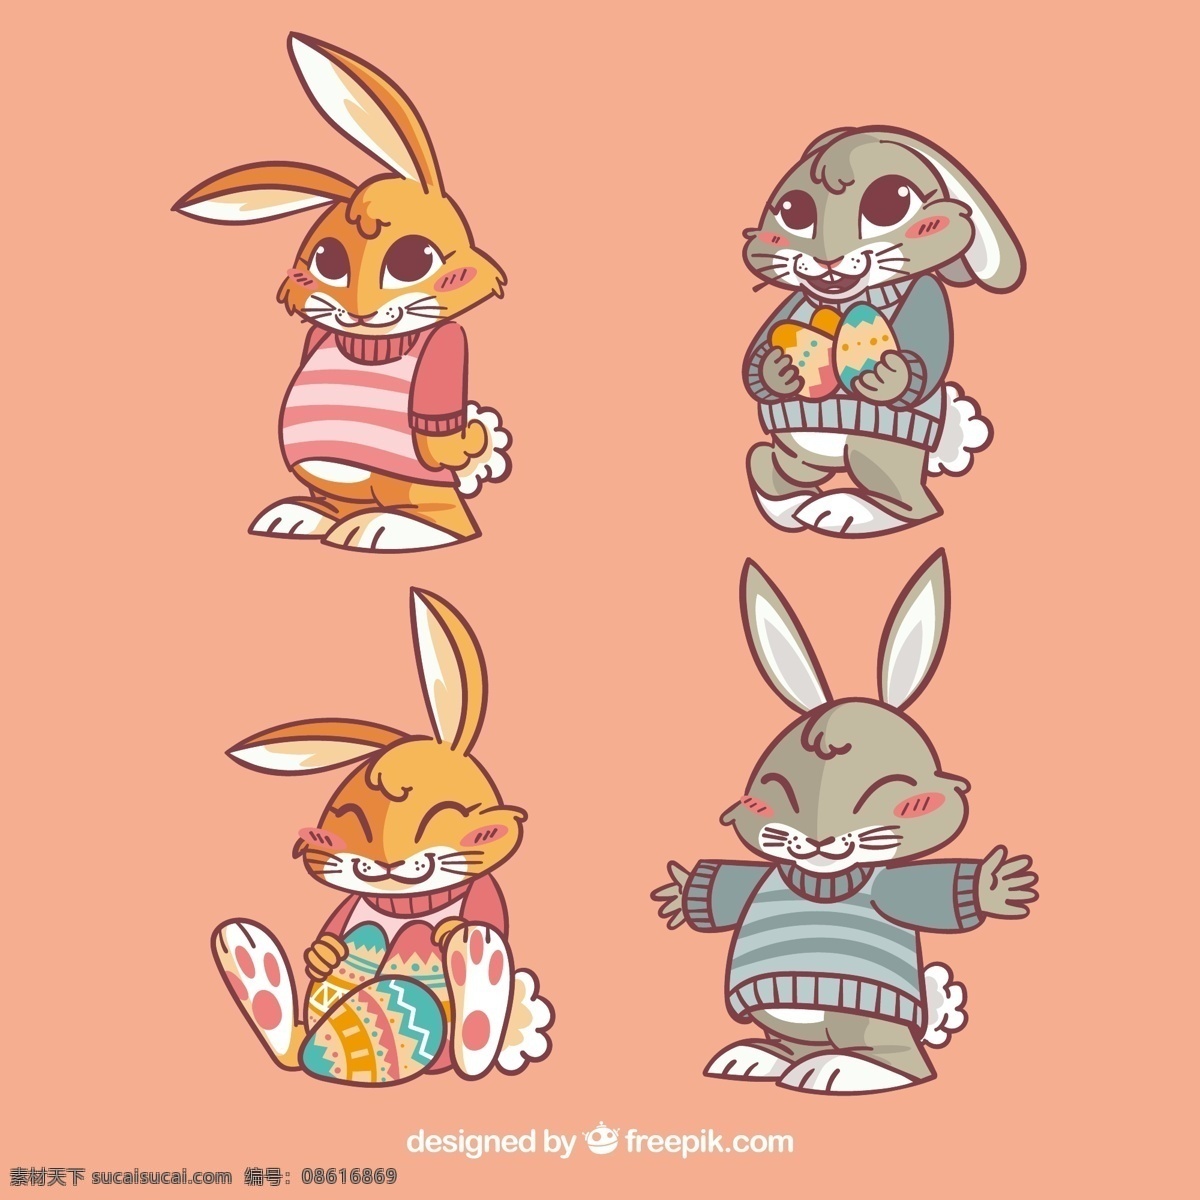 卡通兔子 小白兔 兔 可爱兔子 手绘兔子 宠物 萌宠 森系兔子 q版兔子 插画 手绘 童话动物兔子 背景底纹 底纹边框 矢量图 卡通头像